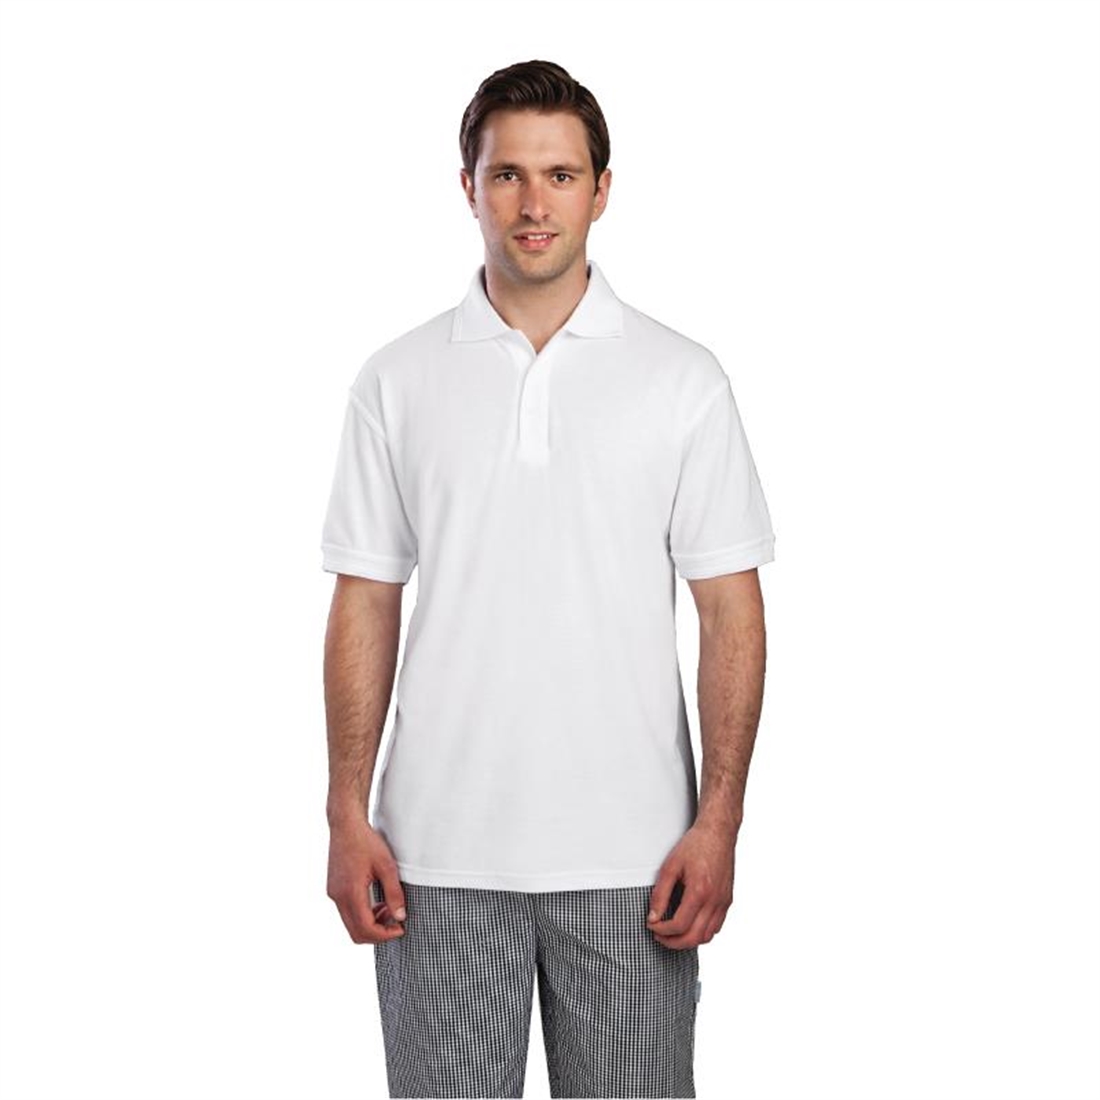 Unisex Polo Shirt White S